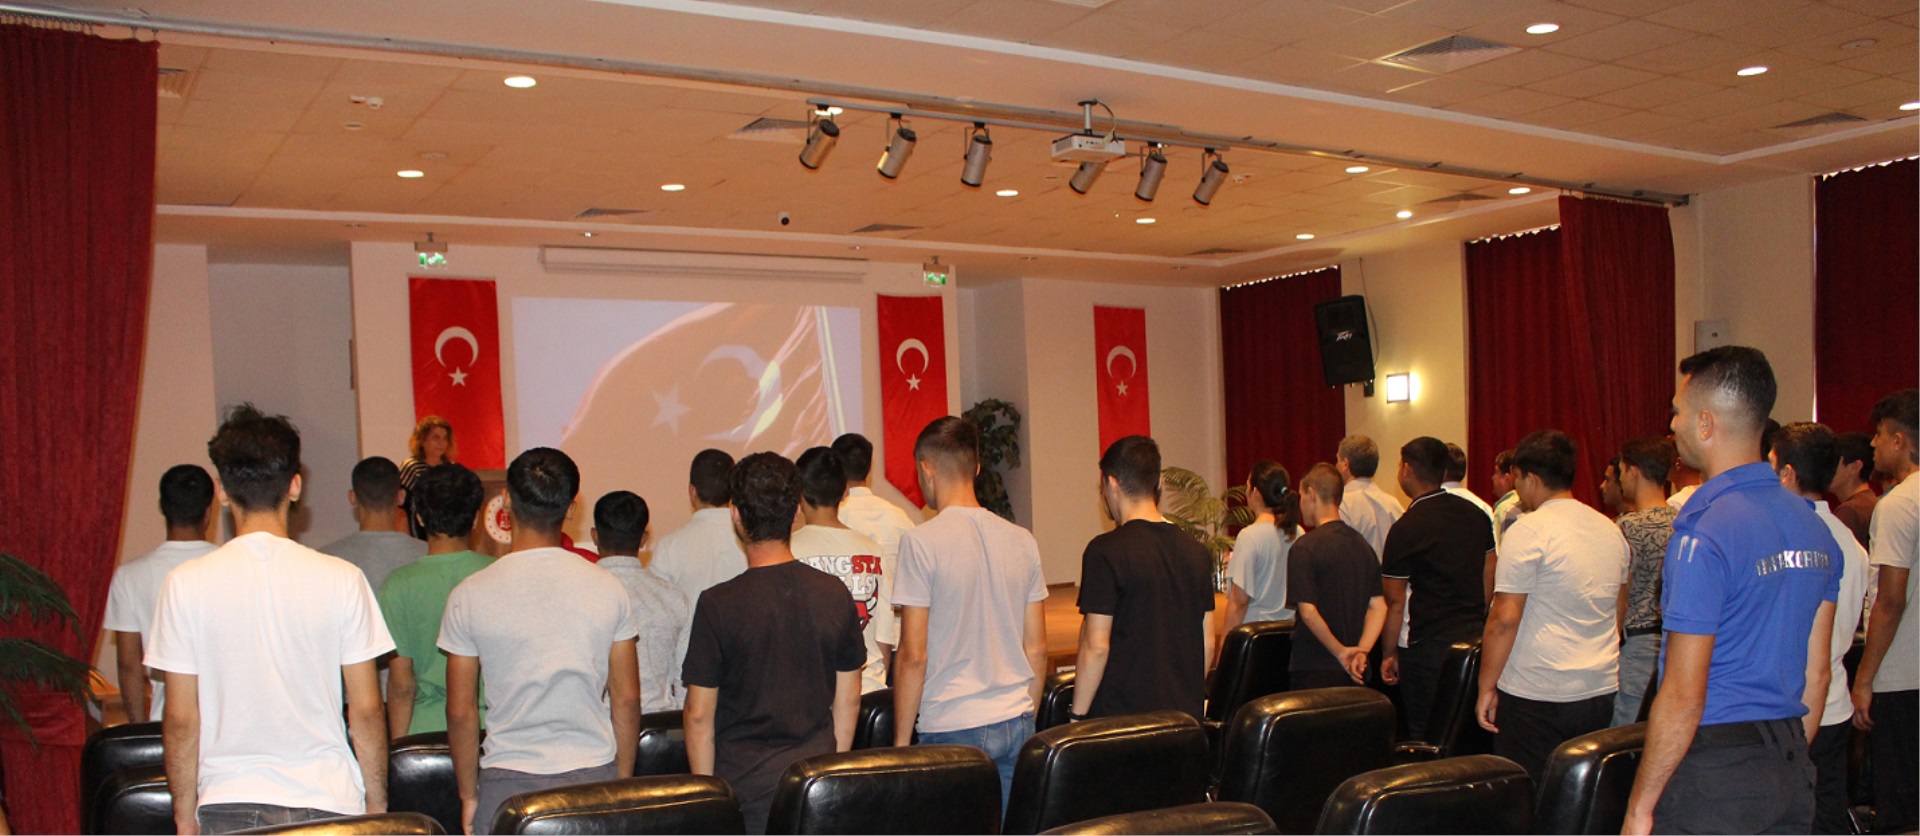 Ankara Çocuk Eğitimevinde “30 Ağustos Zafer Bayramı Coşkusu ve Zafer Şenliği”